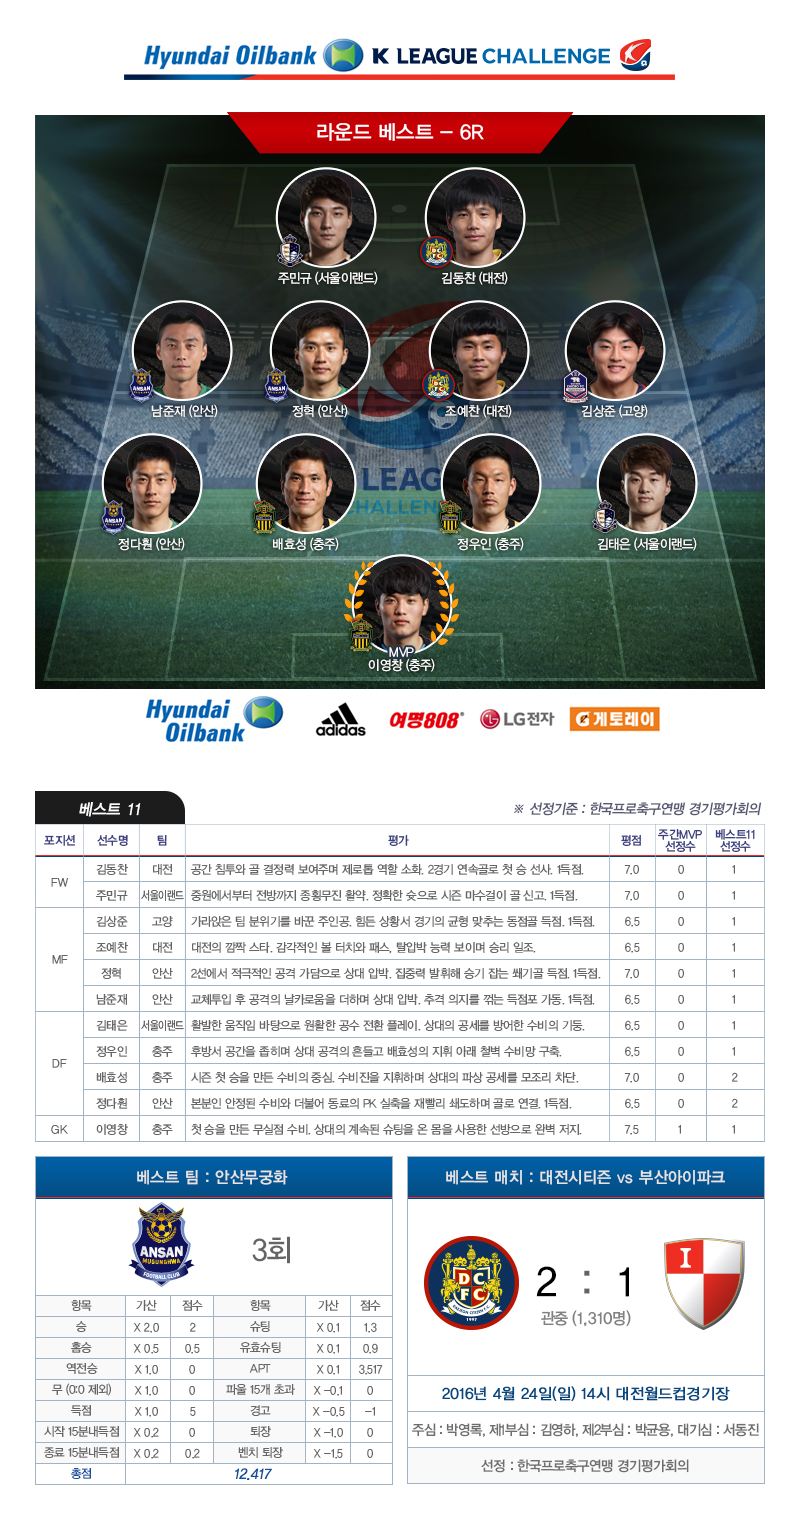 현대오일뱅크 K리그 챌린지 2016 6라운드 베스트11·베스트팀·베스트매치.jpg